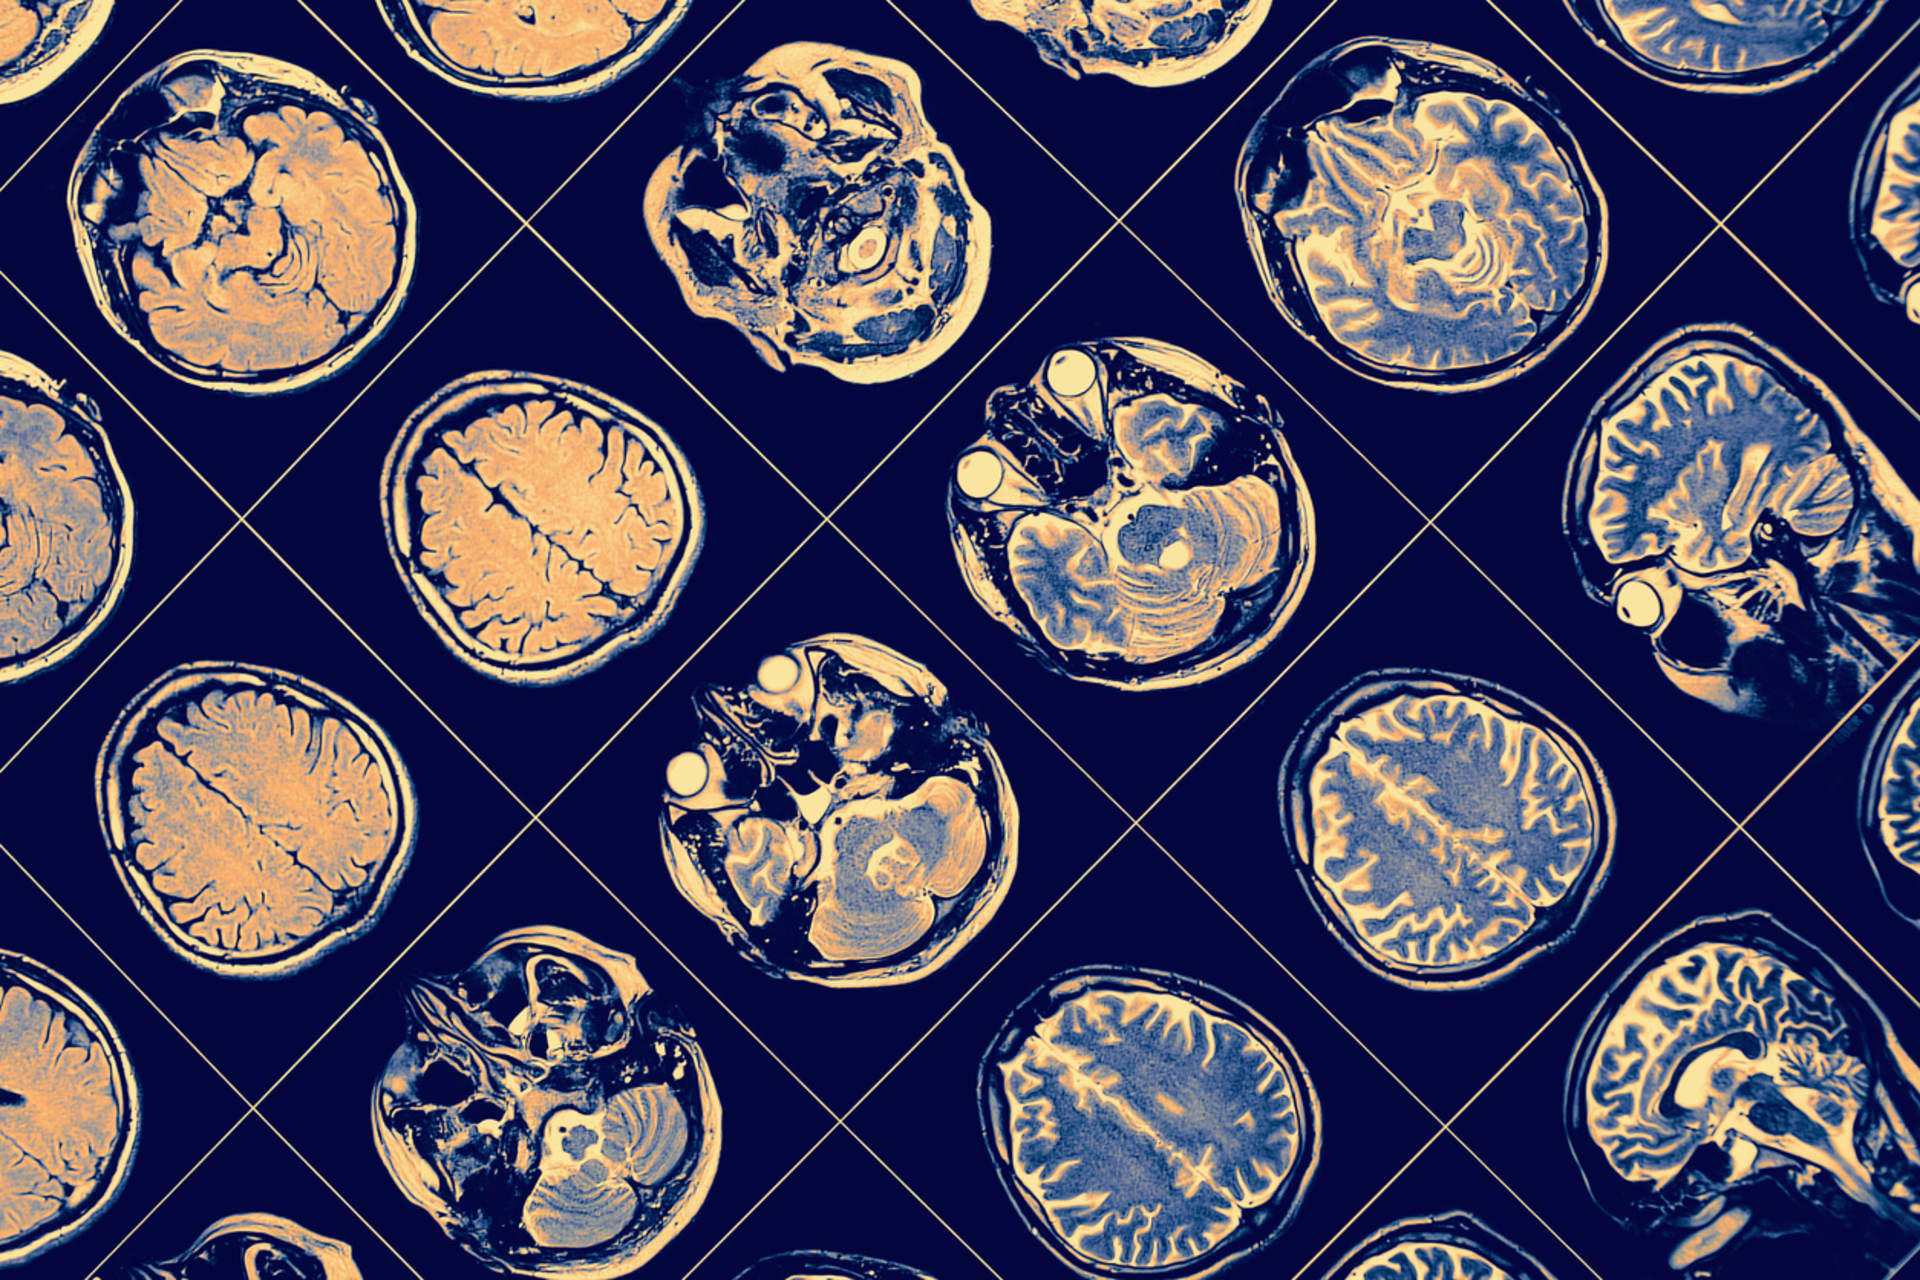 CT mozku může odhalit změny